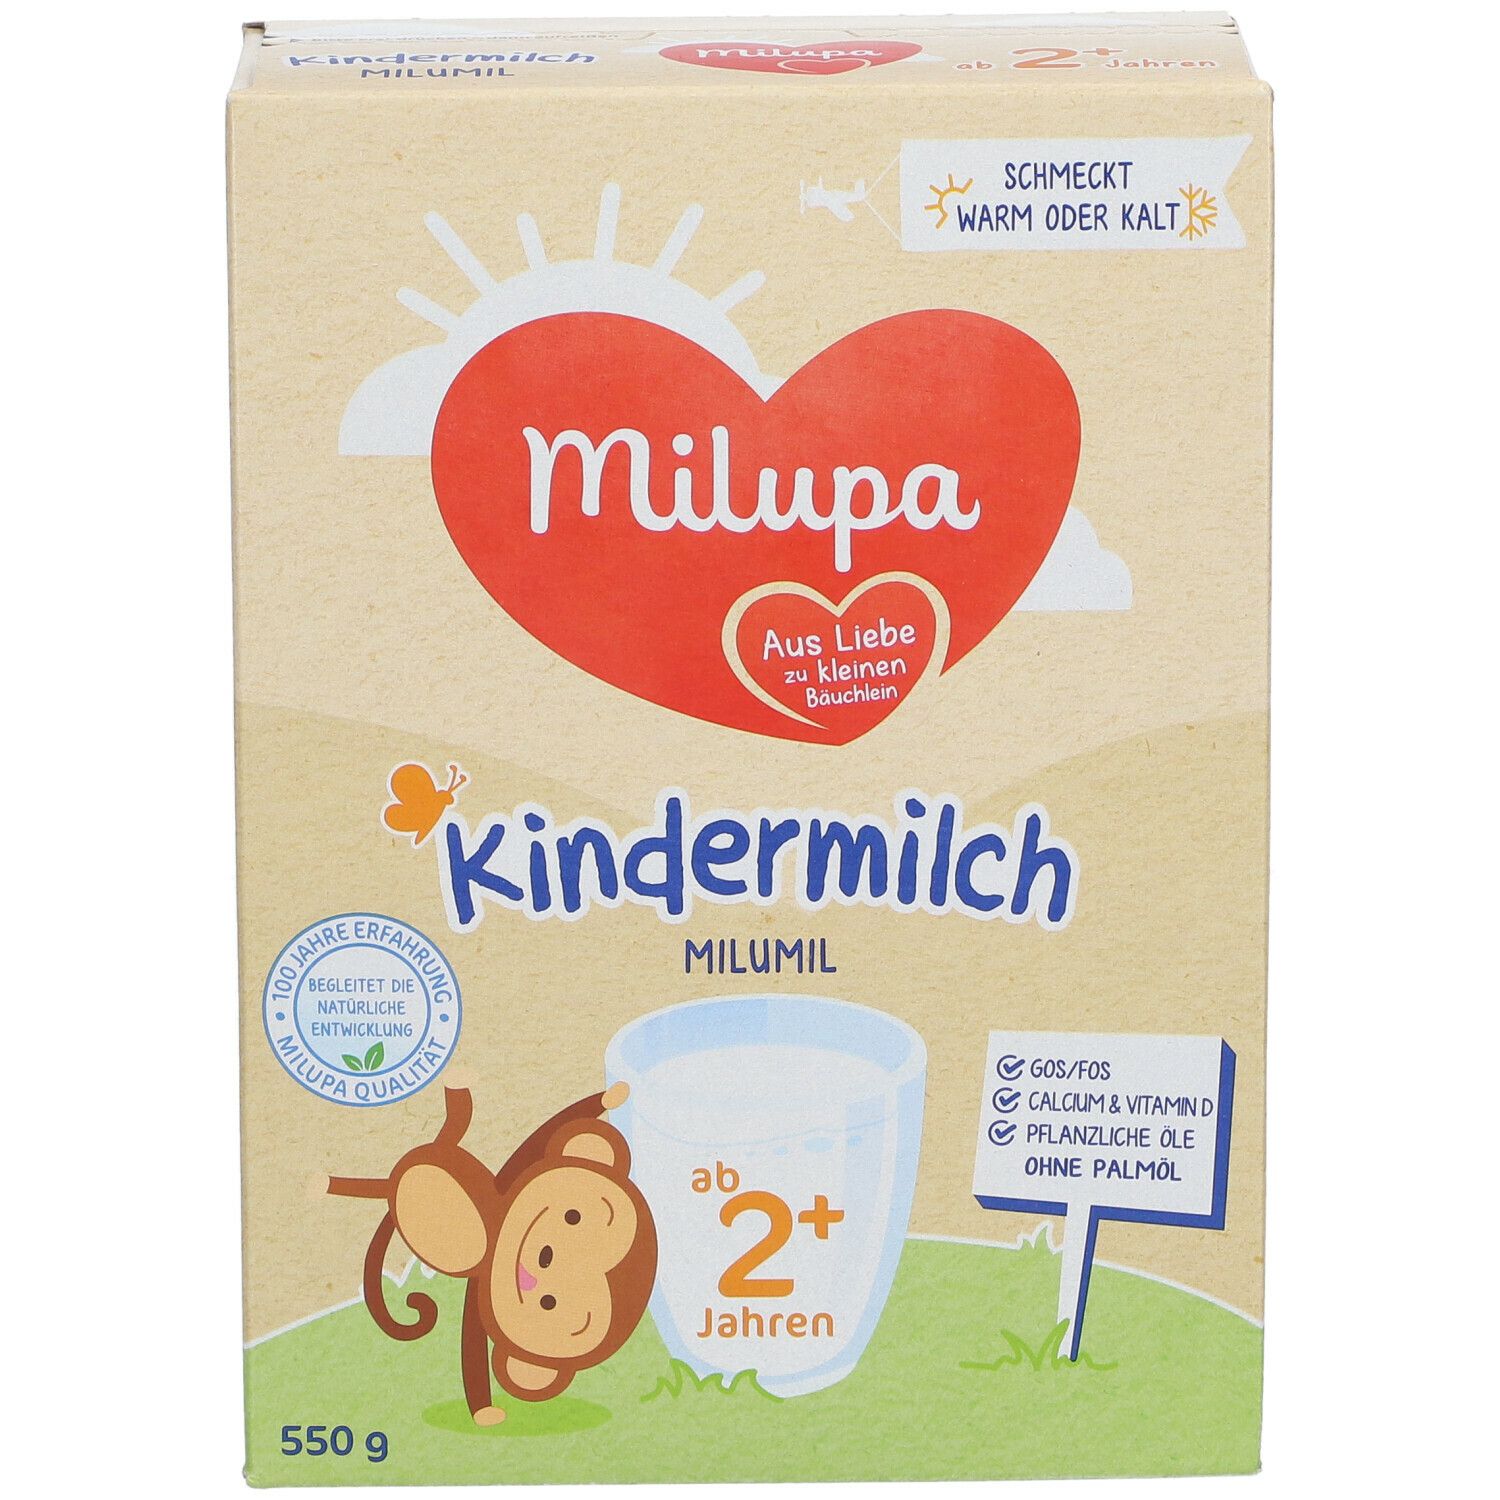 Milupa Kindermilch MILUMIL ab 2+ Jahren